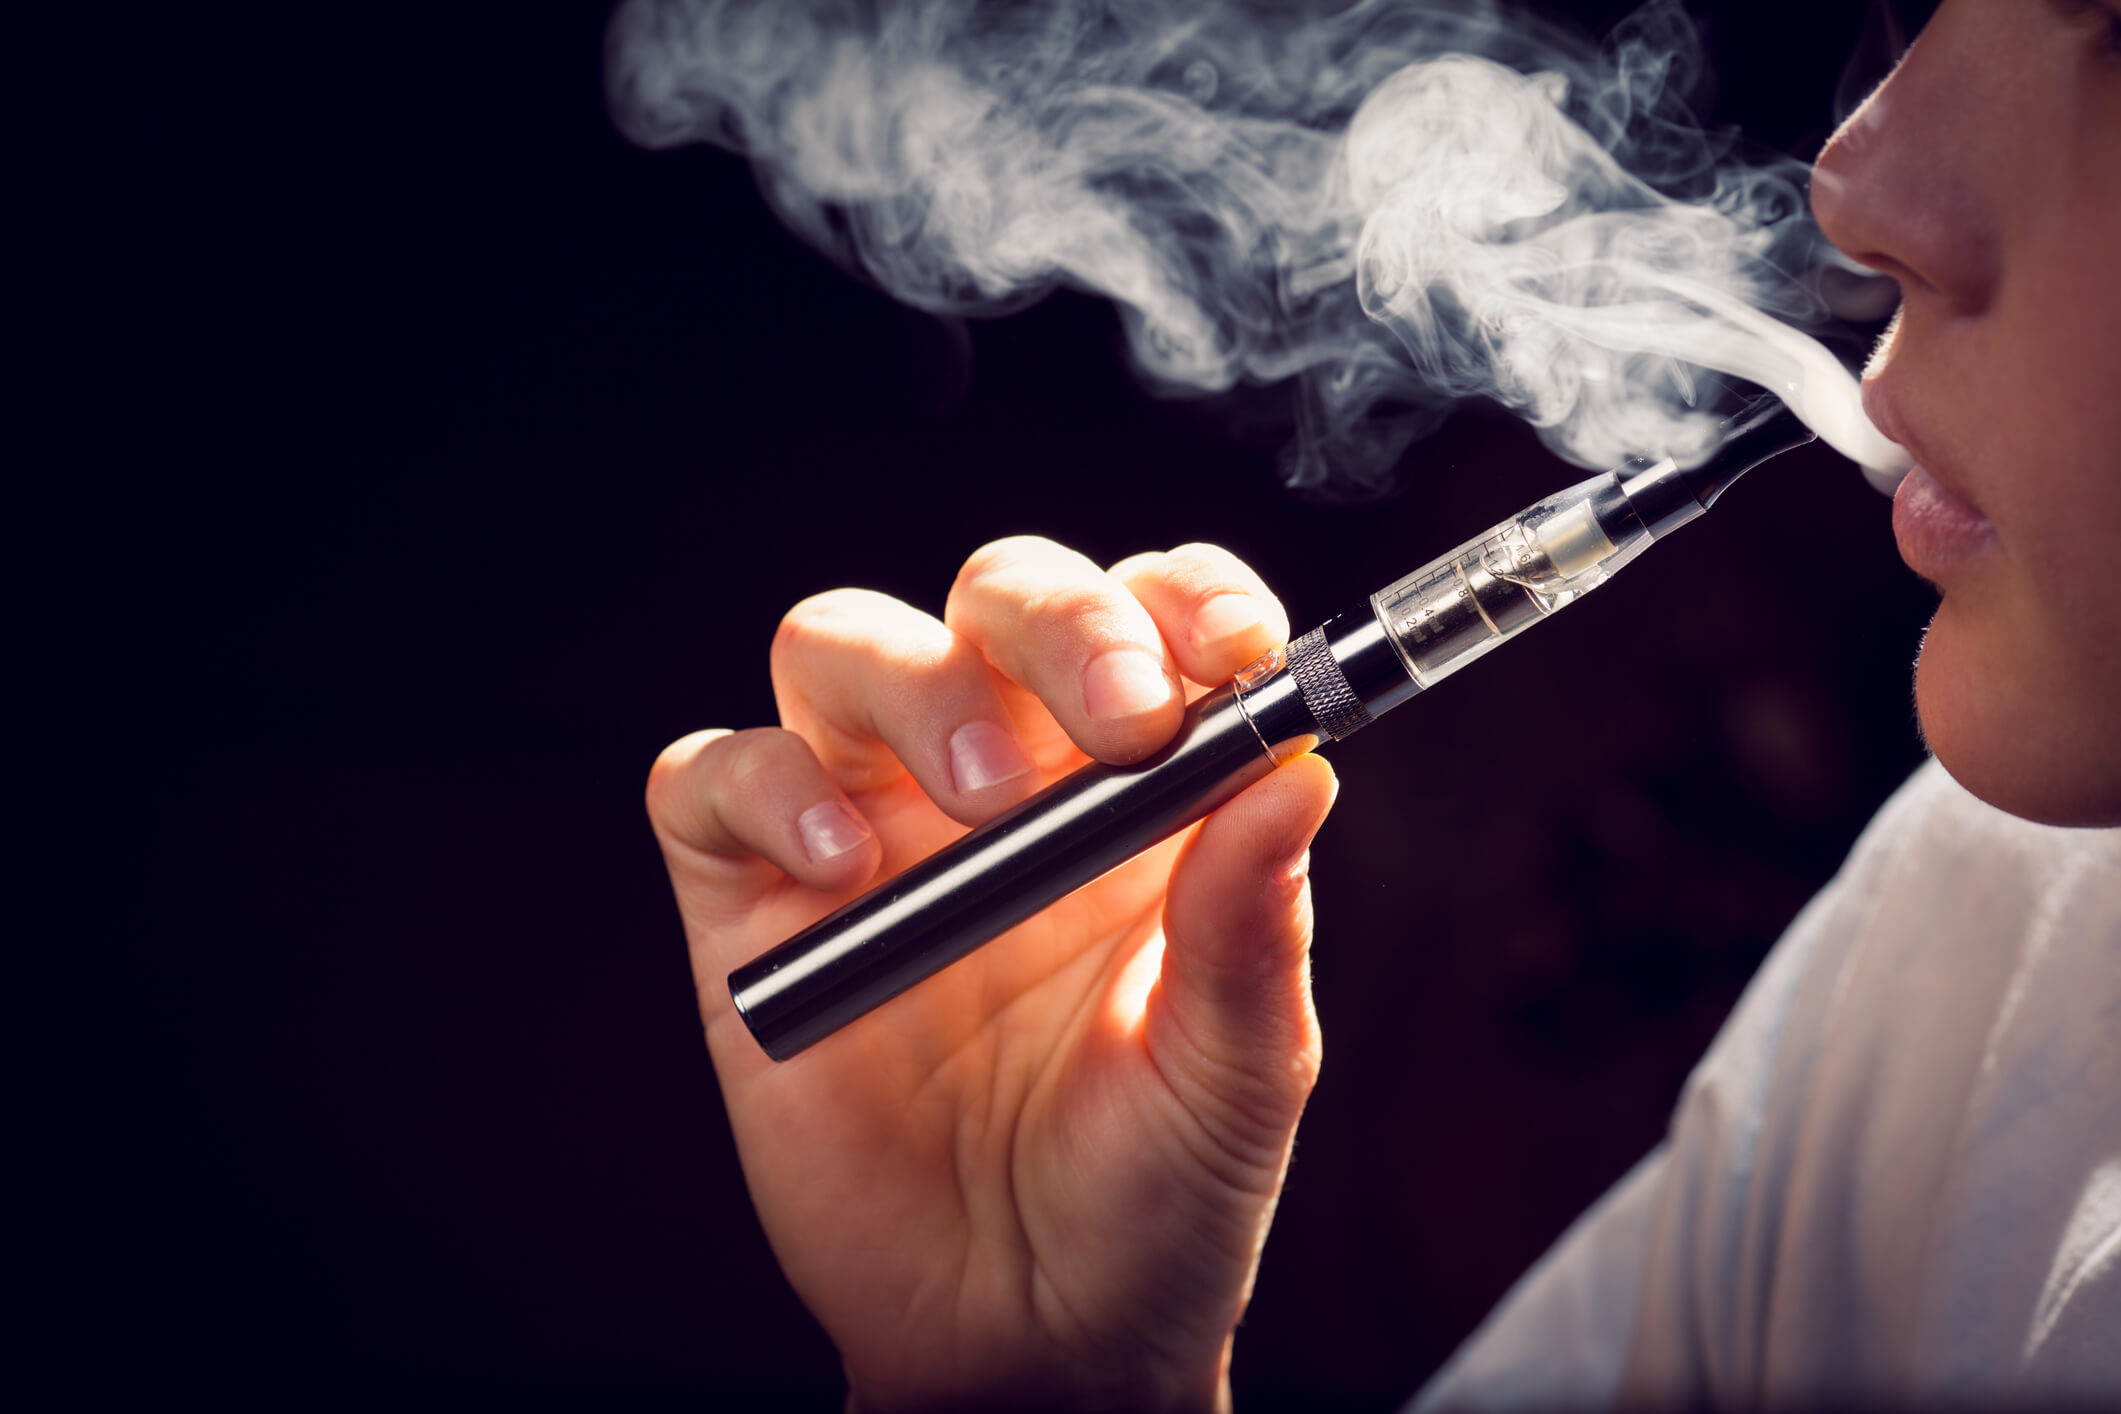 Sigarette elettroniche, senza fumo e tradizionali: quali fanno meno male? 